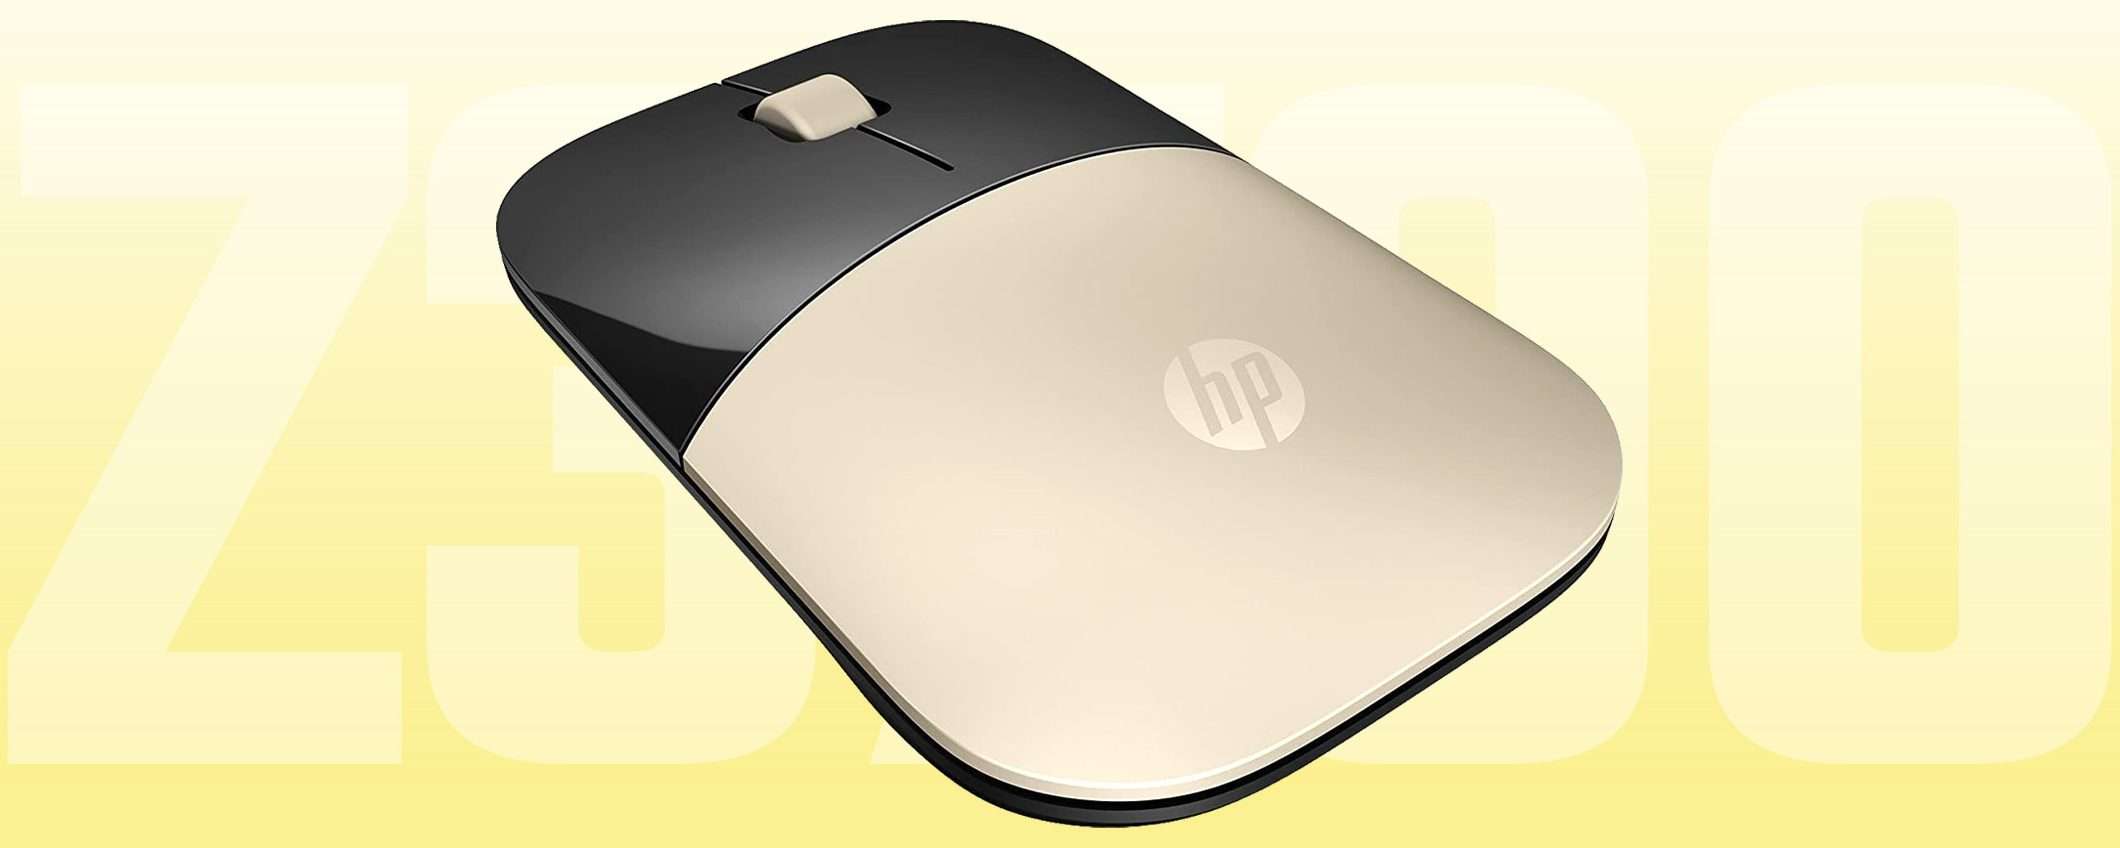 Il mouse wireless di HP a -49%: solo 11€ ed è tuo